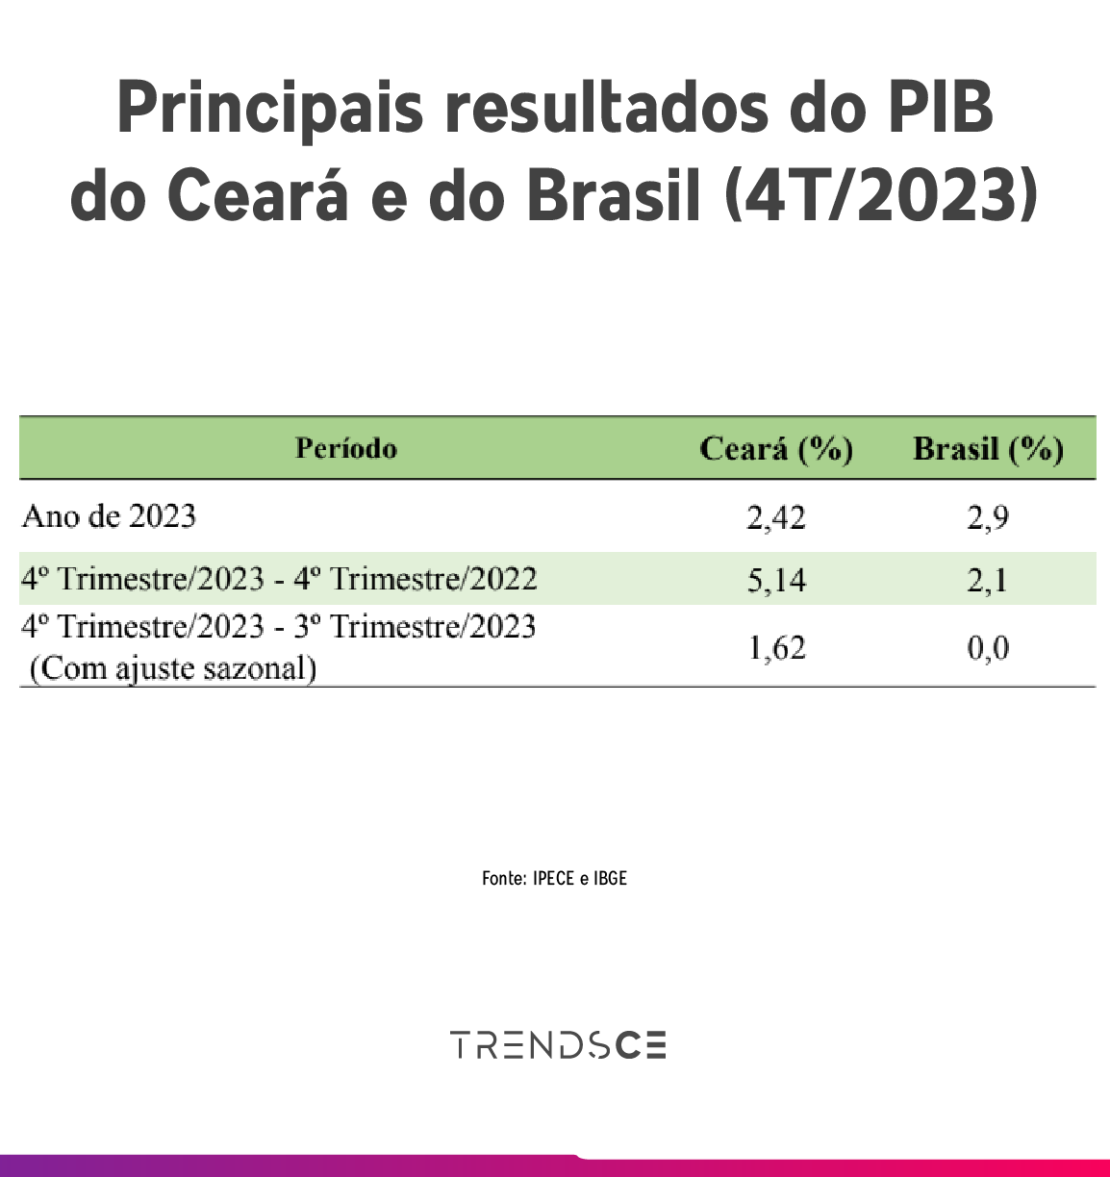 tabela com os principais resultados do PIB Ceará e Brasil do quarto trimestre de 2023.